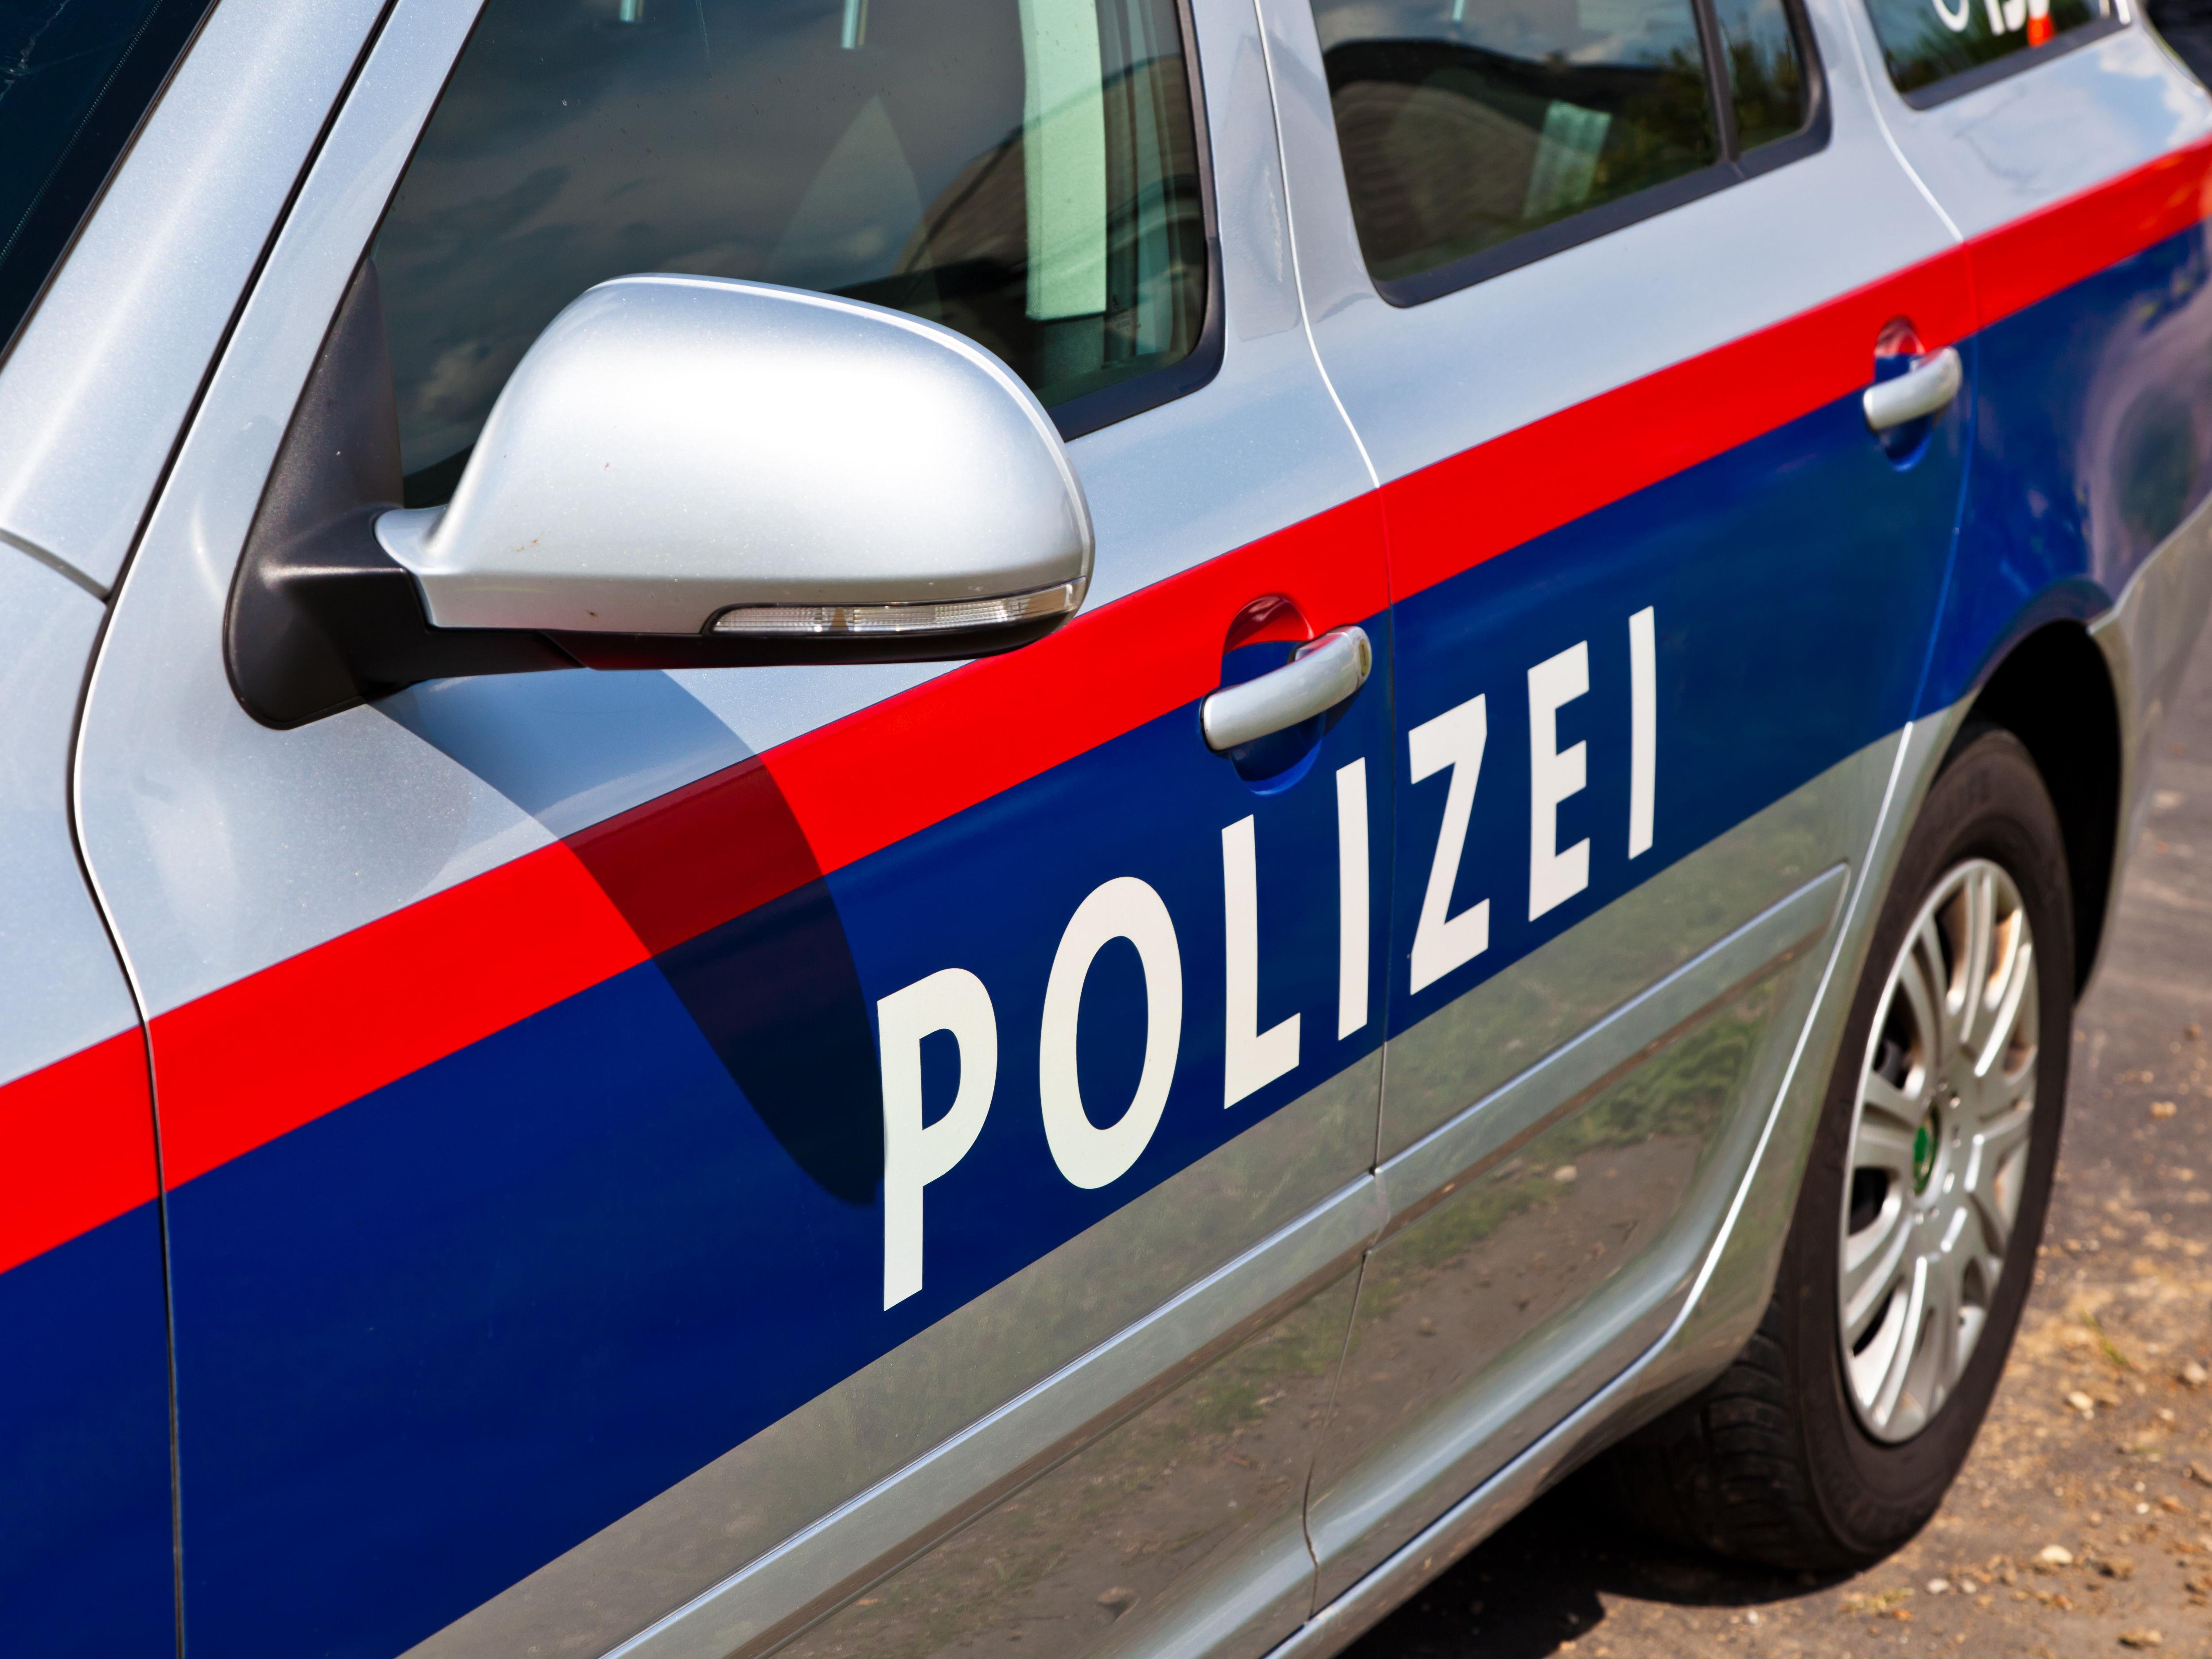 Komplett ausgerastet ist ein 33-jähriger Kunde gestern in Dornbirn.